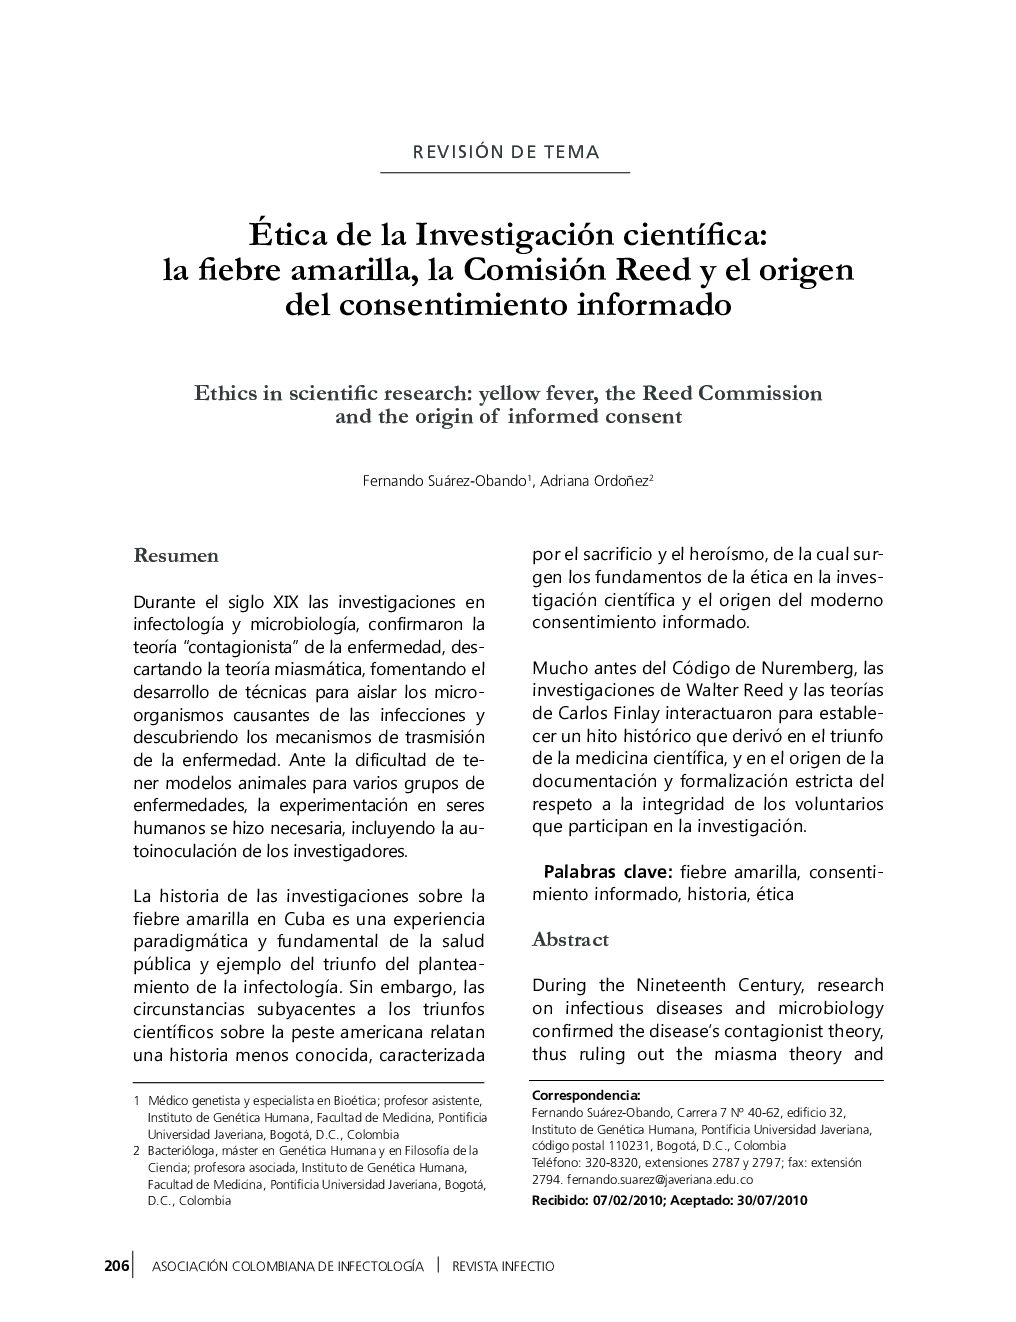 Ética de la Investigación científica: la fiebre amarilla, la Comisión Reed y el origen del consentimiento informado